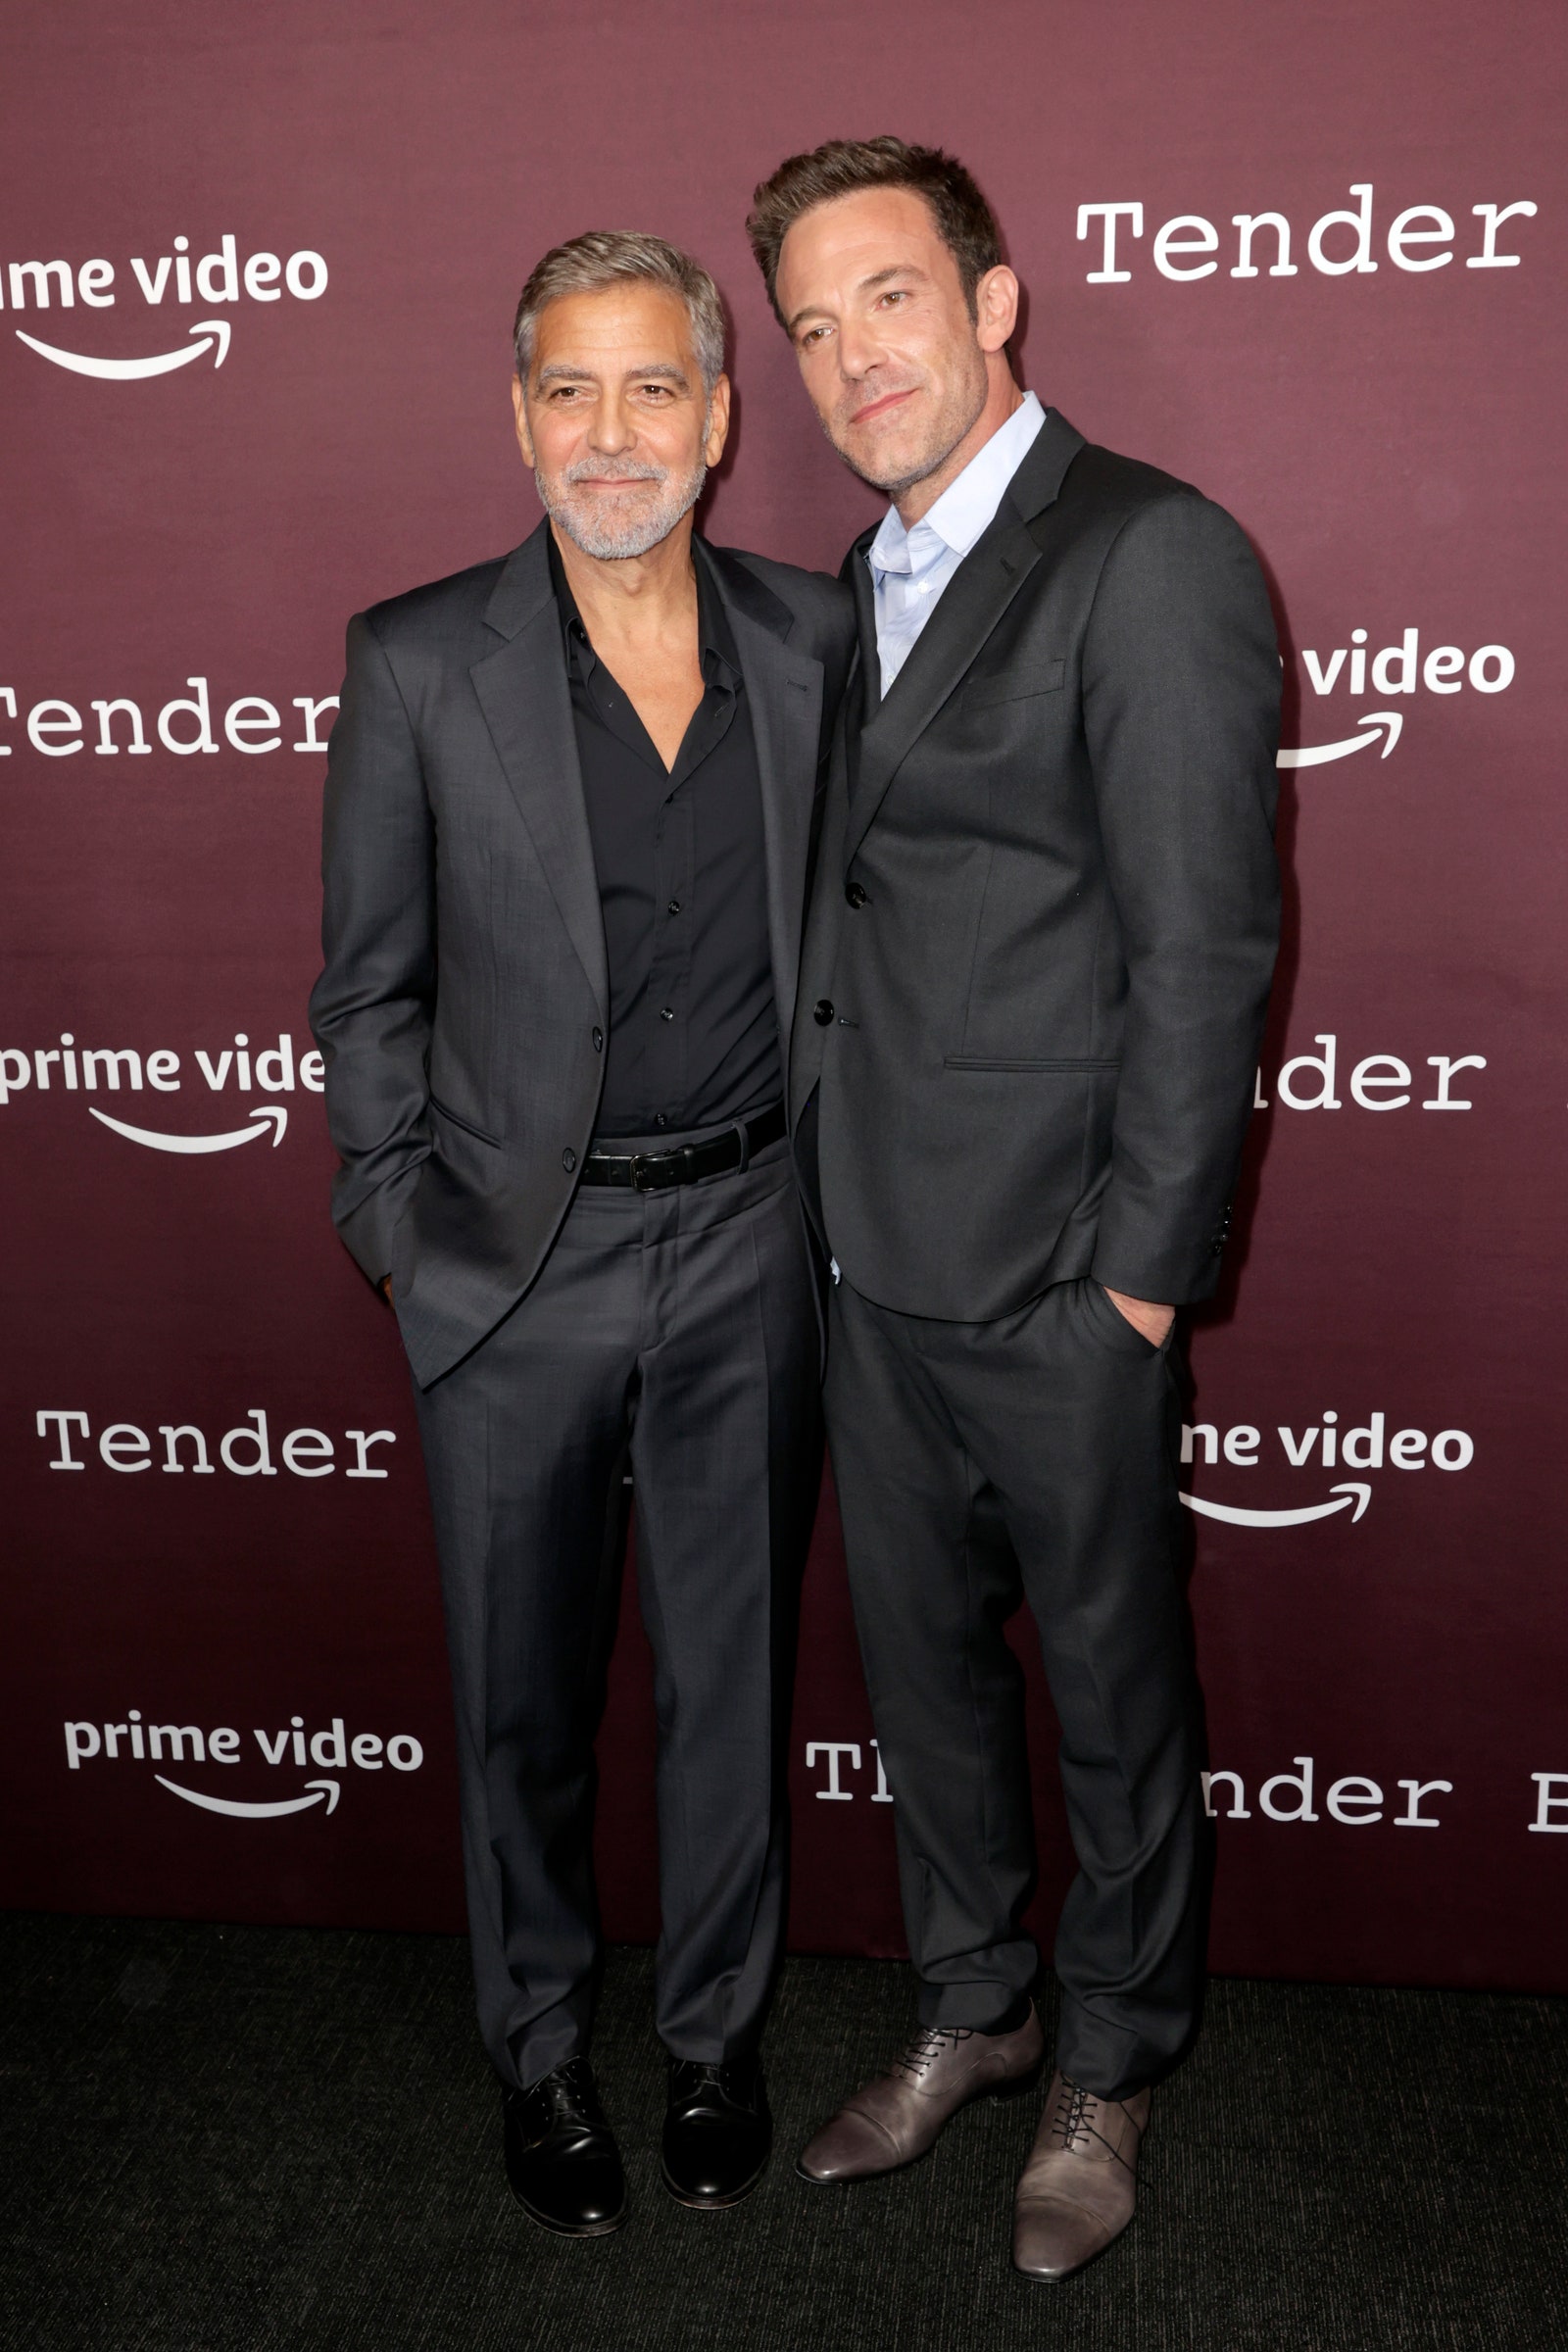 Посмотрите на редкий выход Джорджа и Амаль Клуни